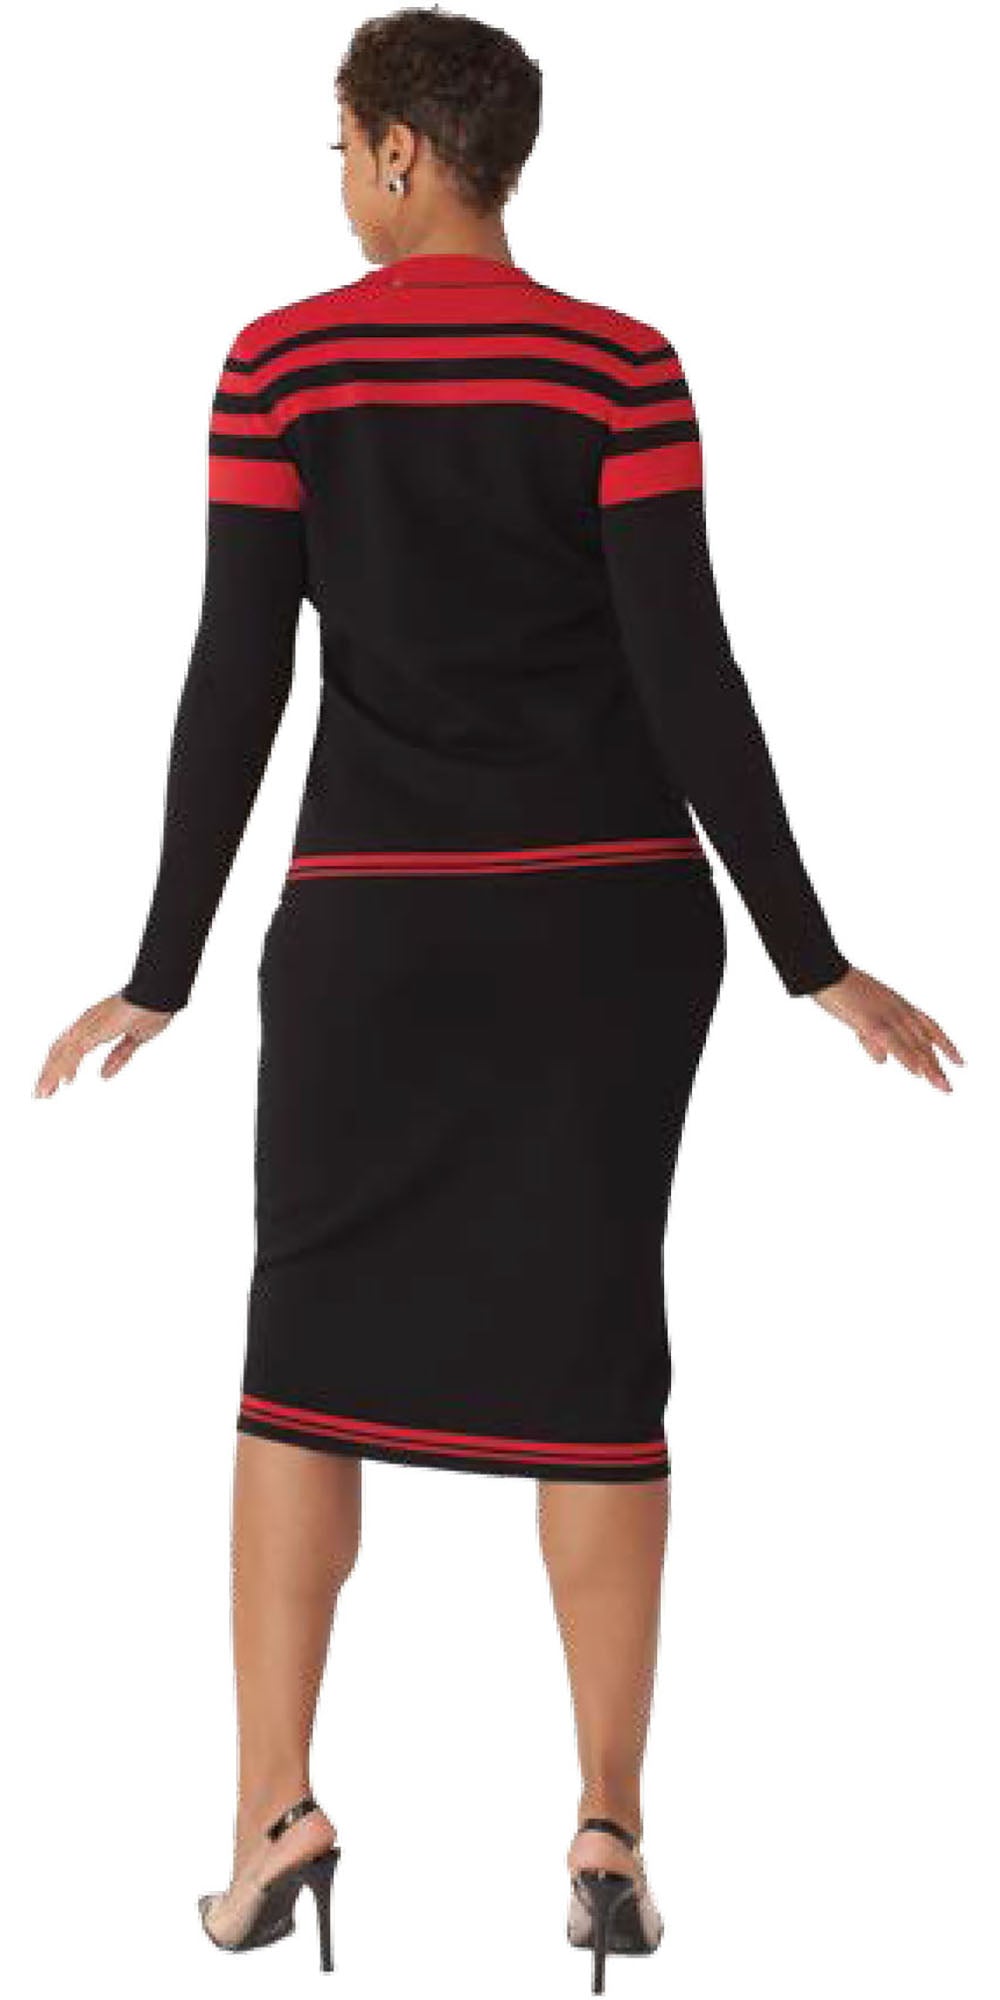 Kayla 5324 - Black Red - Print Knit Two-tone 2pc Skirt Set